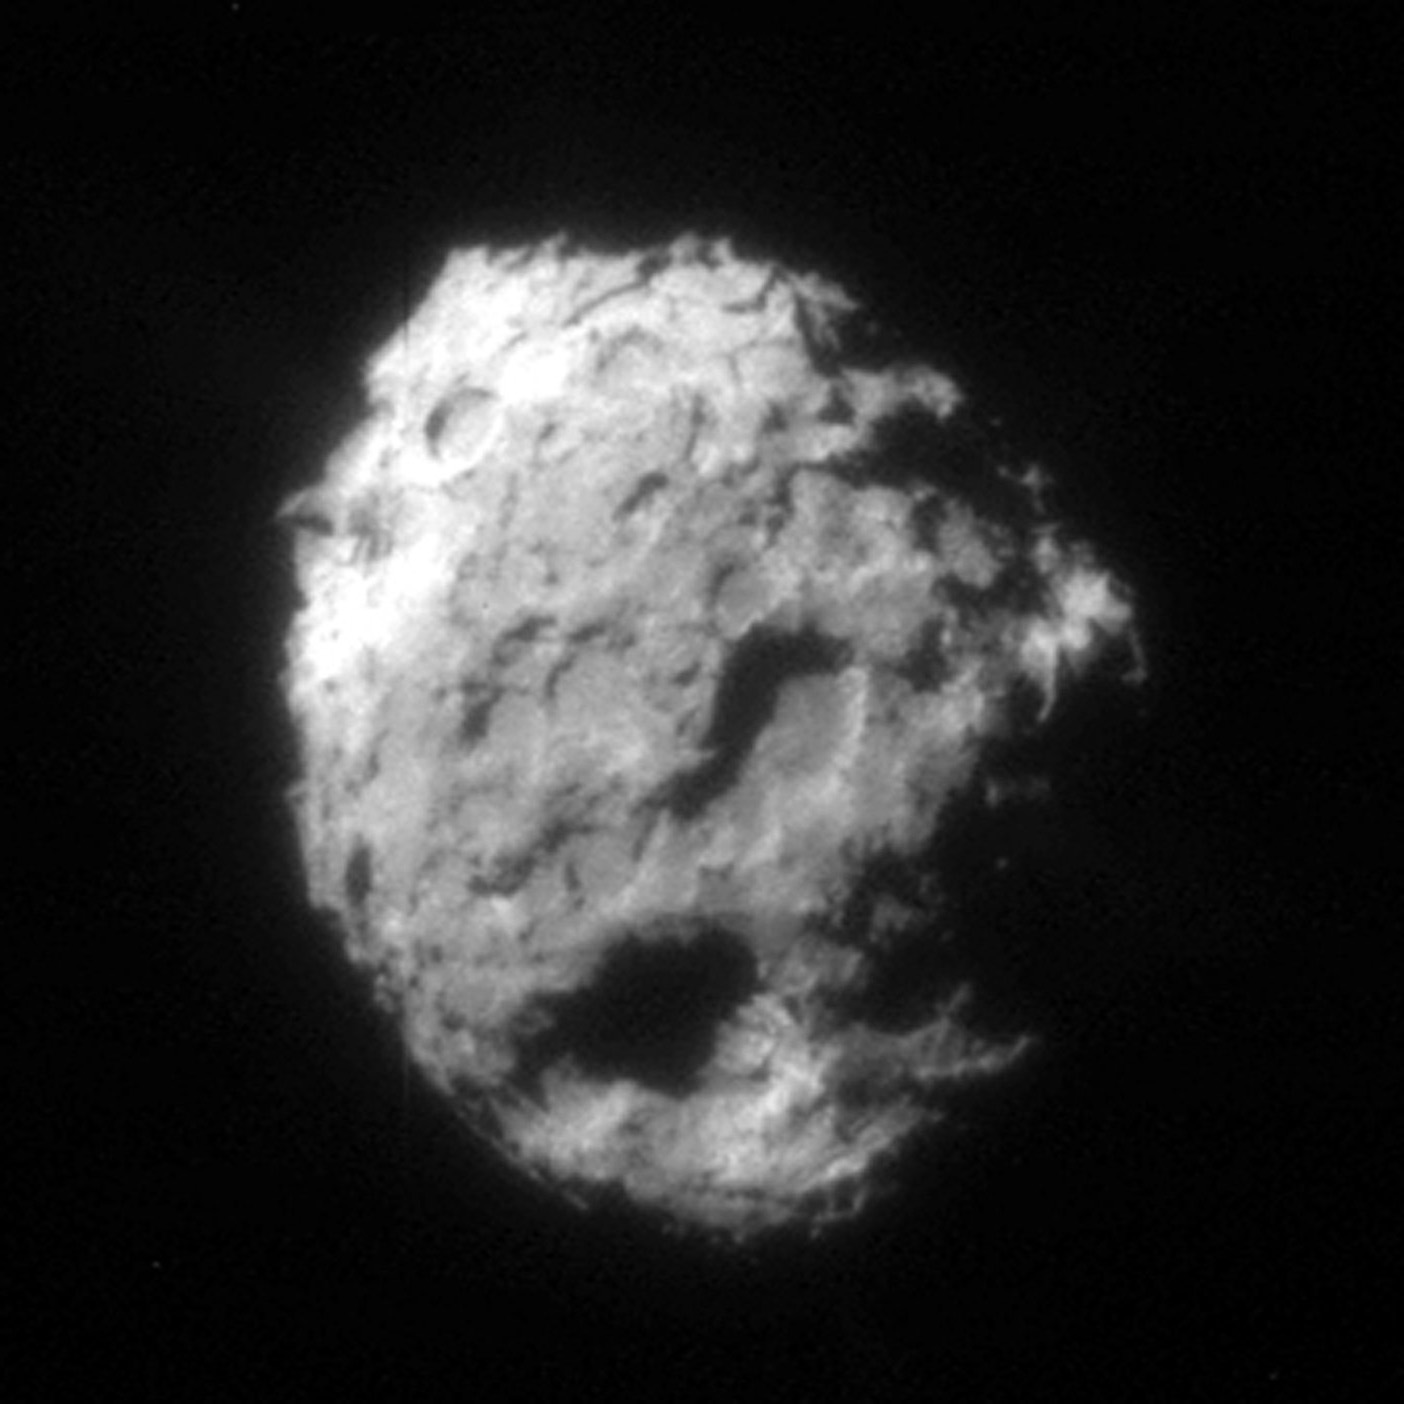 Комета Wild 2, сфотографированная зондом Stardust в 2004 году. Фото © NASA